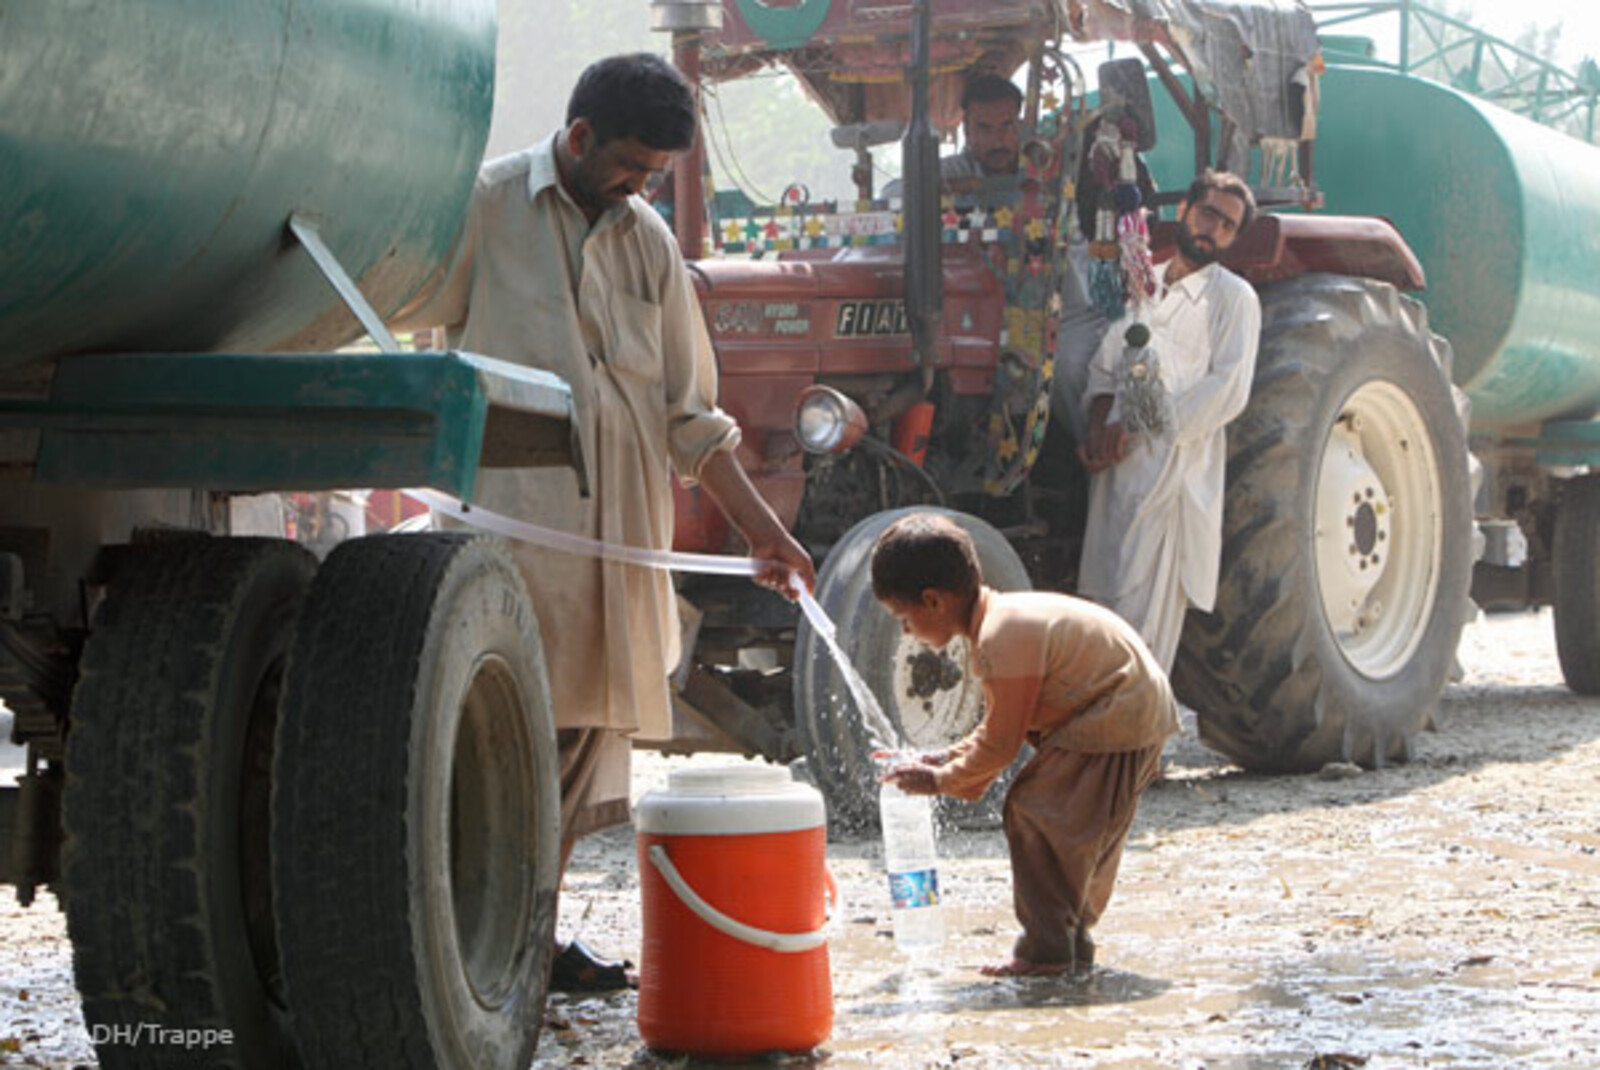 Flut Pakistan: Junge holt Wasser am Wasserwagen